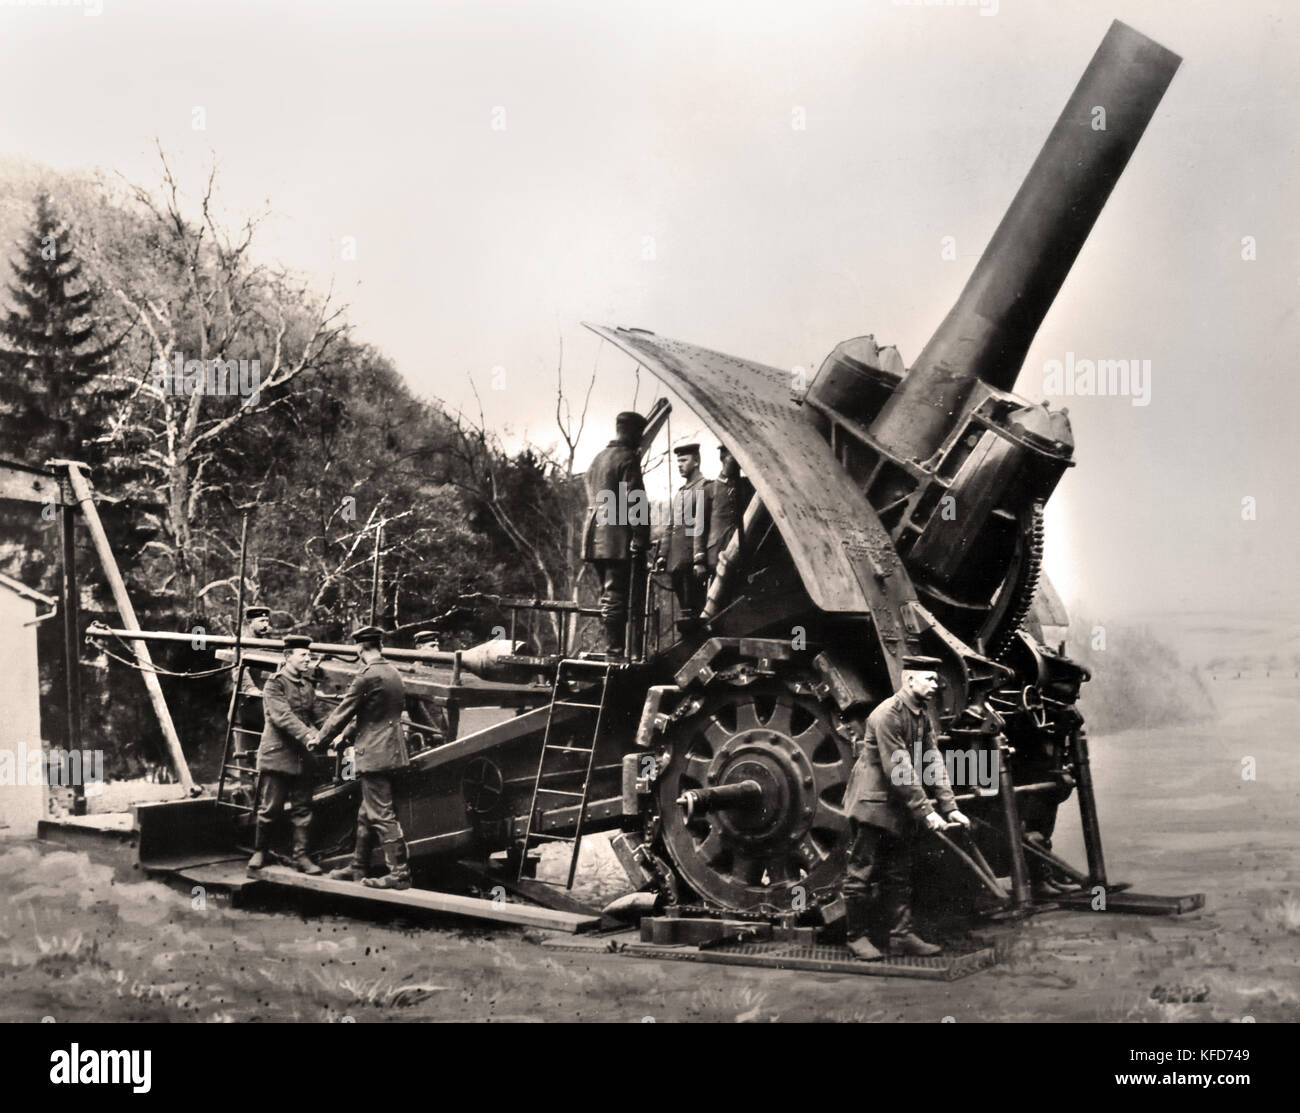 L'un des premiers grands Berthas en préparation pour la cuisson - Première Guerre mondiale - Première Guerre mondiale, la Grande Guerre, le 28 juillet 1914 au 11 novembre 1918. ( Big Bertha (Howitzer) de l'artillerie super lourde de l'état de siège mis au point par le fabricant de l'armement Krupp en Allemagne à la veille de la Première Guerre mondiale son canon de calibre 420 mm de diamètre était de 16,5 pouces ) Banque D'Images